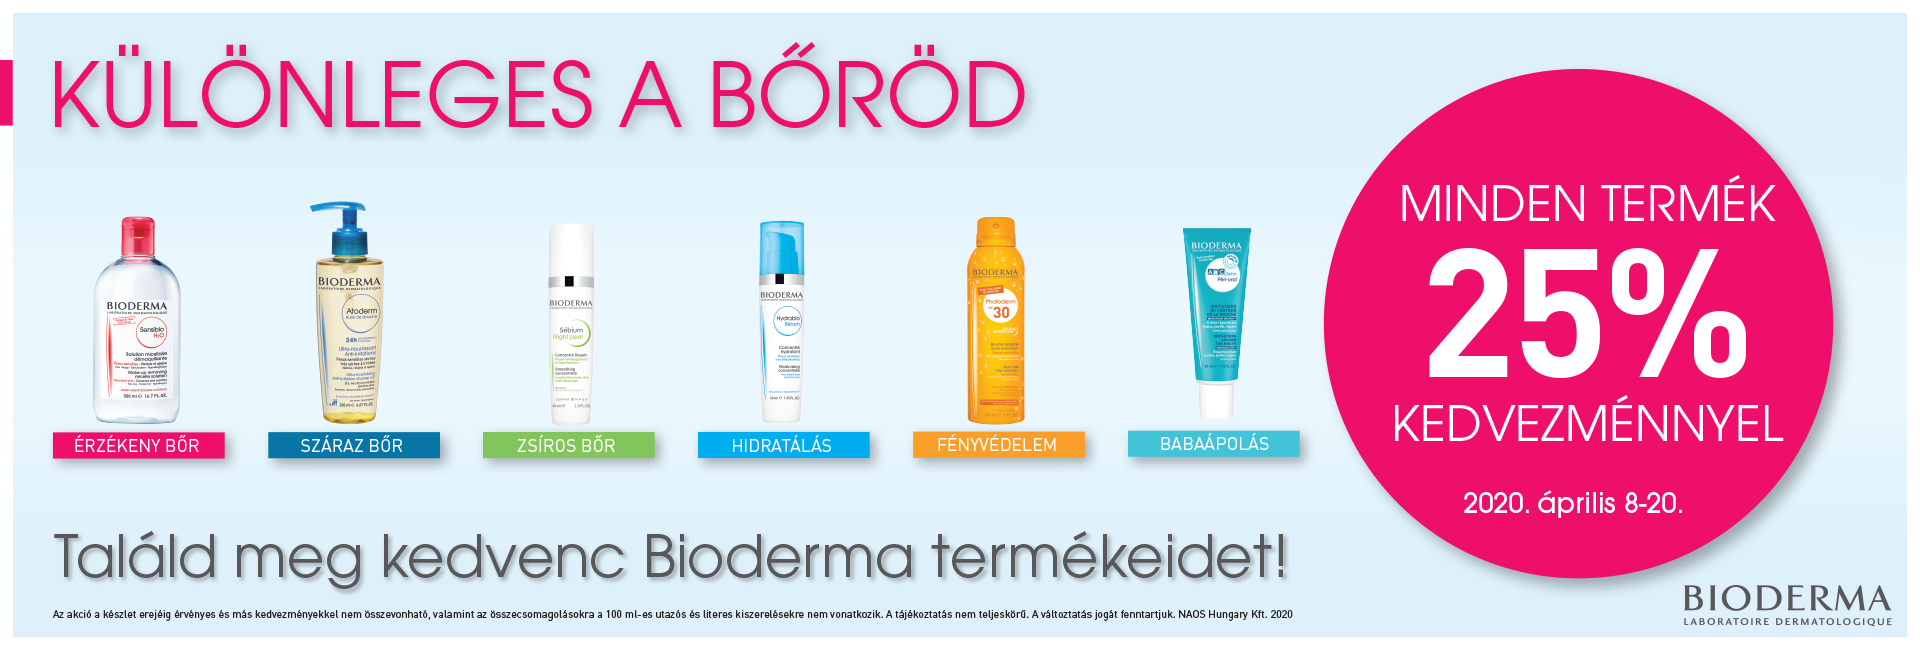 BIODERMA NAPOK: 2020. április 8-20. között minden Bioderma terméket 25% kedvezménnyel kínálunk!